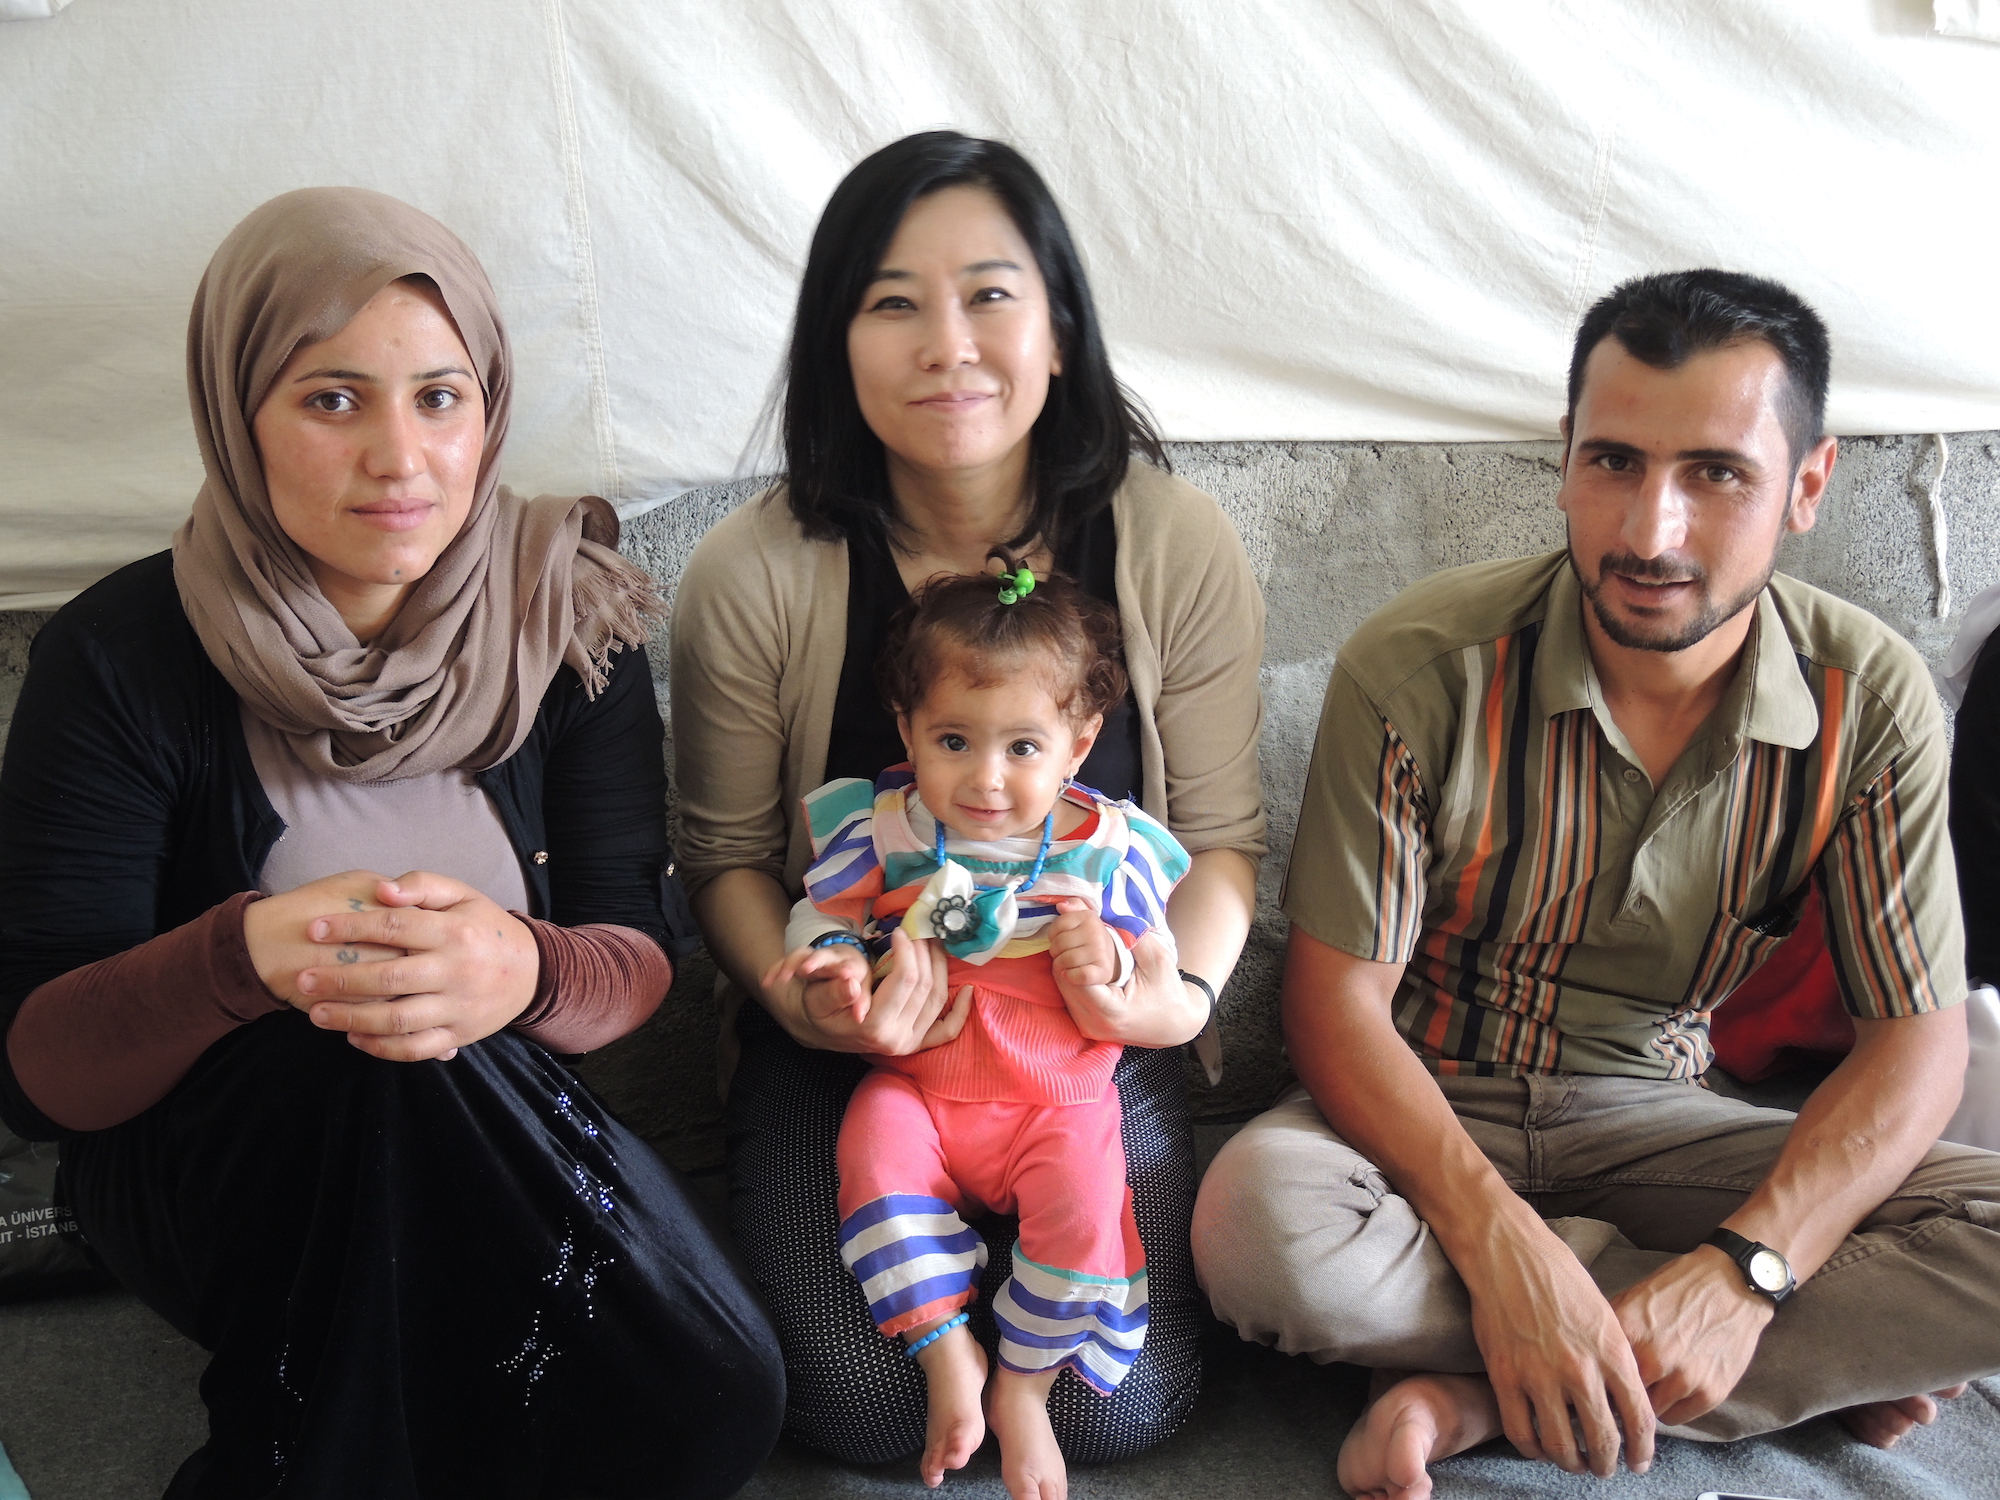 イラク北部シンジャルの結婚式で会ったヤズディ教徒の夫婦。村はISに制圧され、殺されたり行方不明になったりした親戚も多数いる。2人は襲撃時、近くの山へ逃れて助かった。現在クルド自治区の避難民キャンプに身を寄せ、イラクへ行くたび訪ねている。（2015年9月 イラク クルド自治区で友人撮影、Photography: Courtesy of 玉本英子）